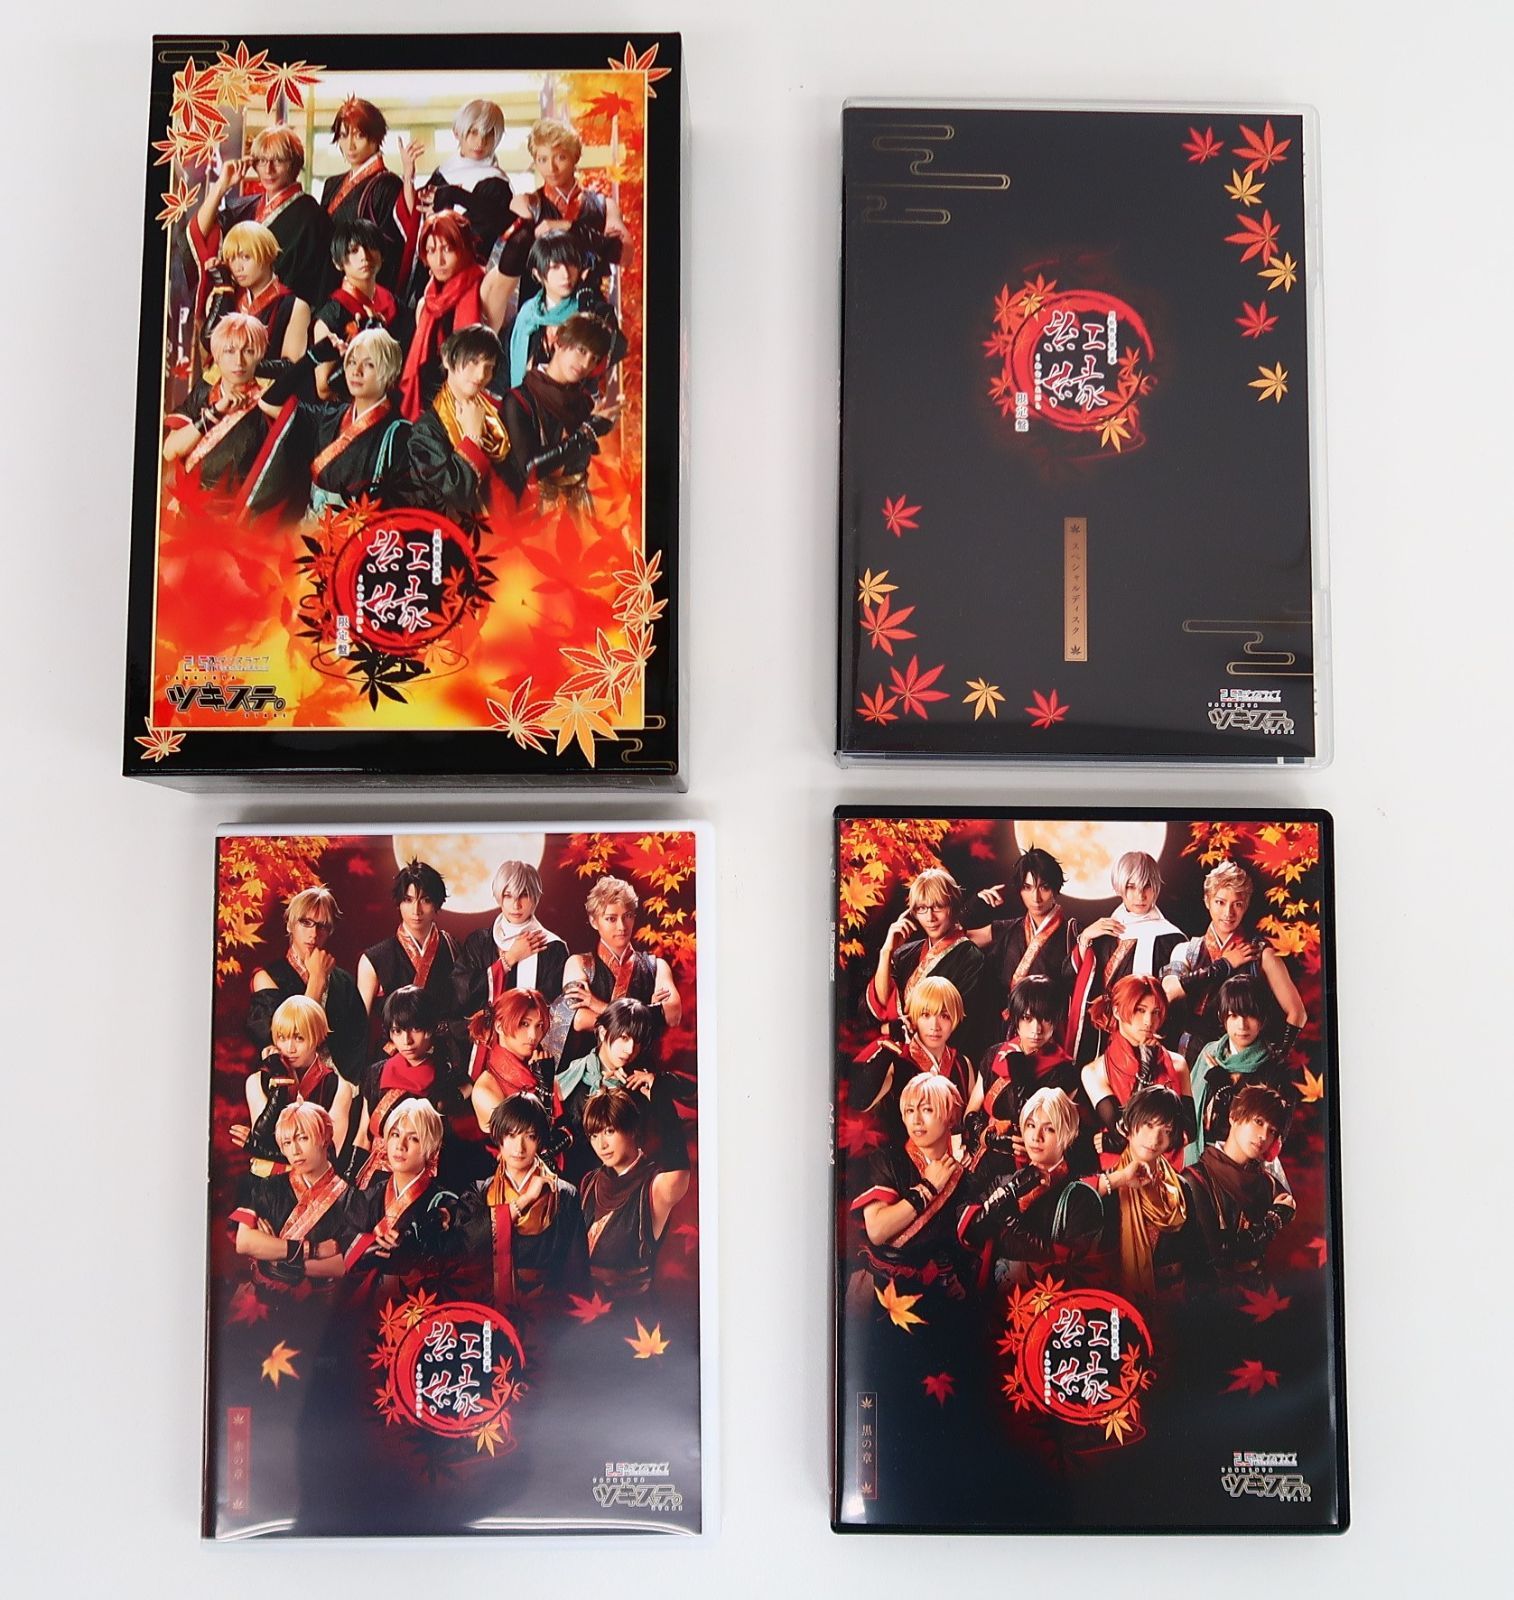 Blu-ray 2.5次元ダンスライブ「ツキウタ。」ステージ 月歌舞台第六幕 紅縁 限定盤 - メルカリ